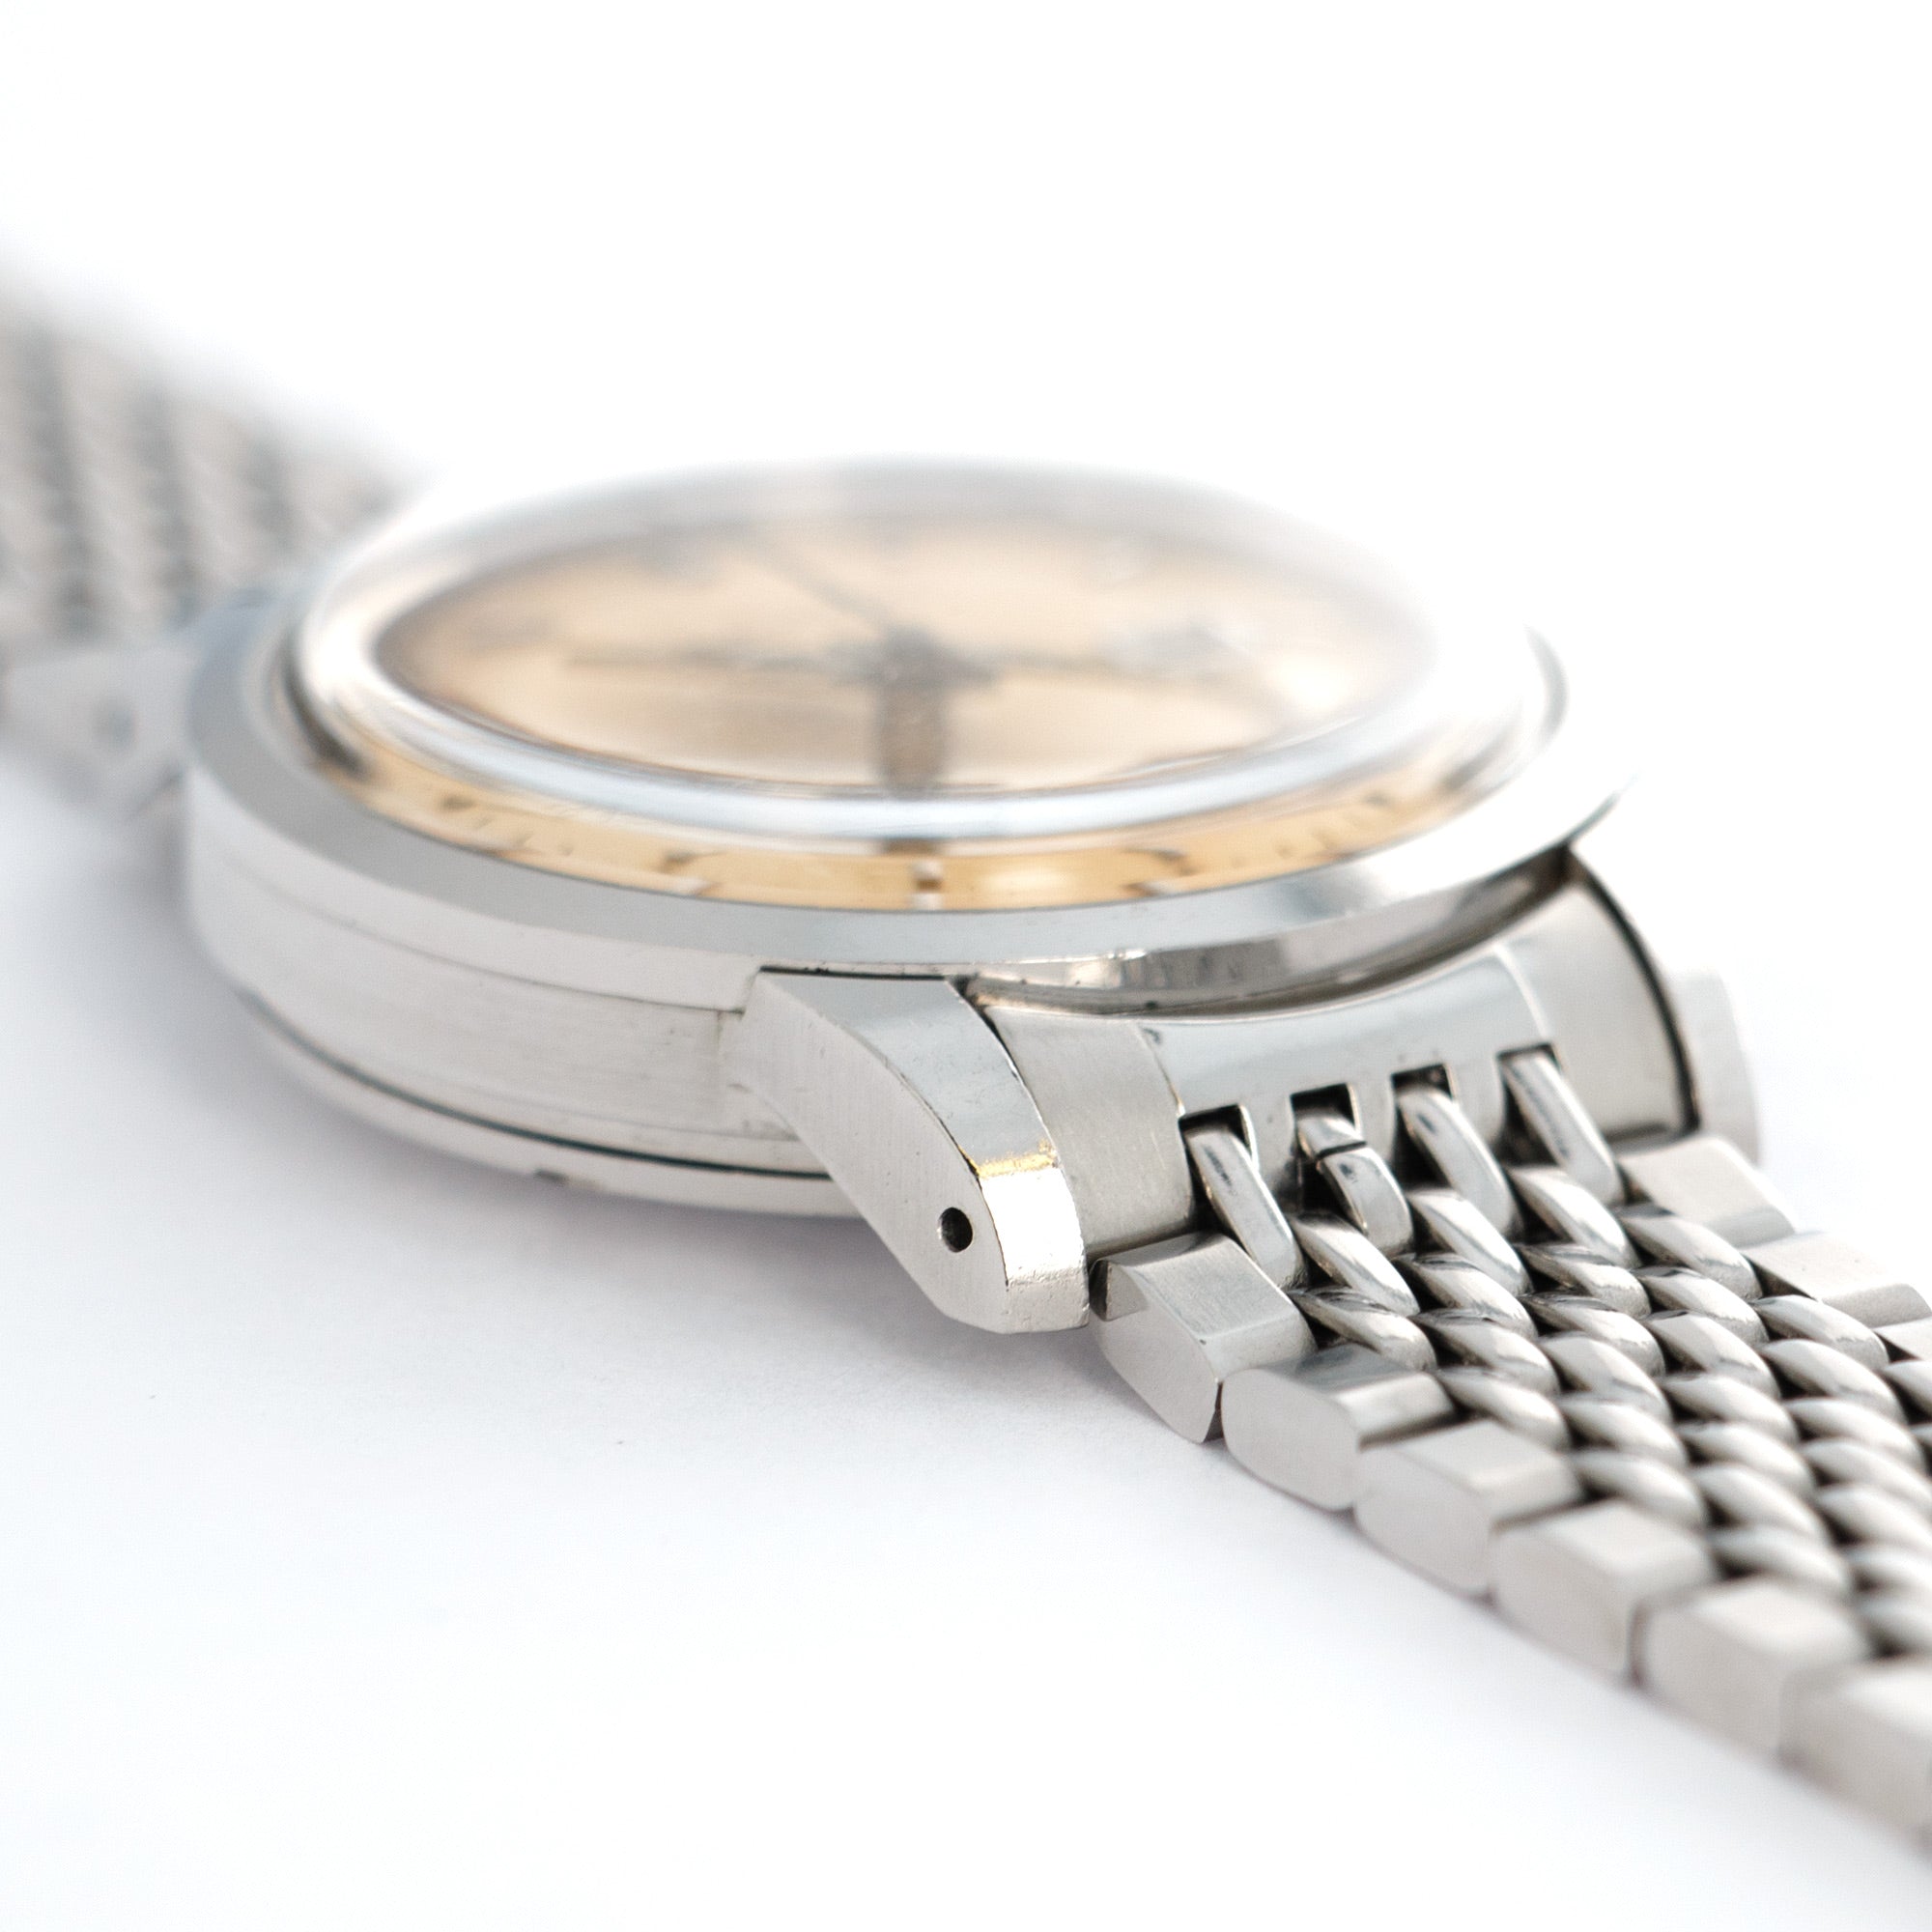 IWC - IWC Ingenieur Automatic Watch Ref. 666 - The Keystone Watches